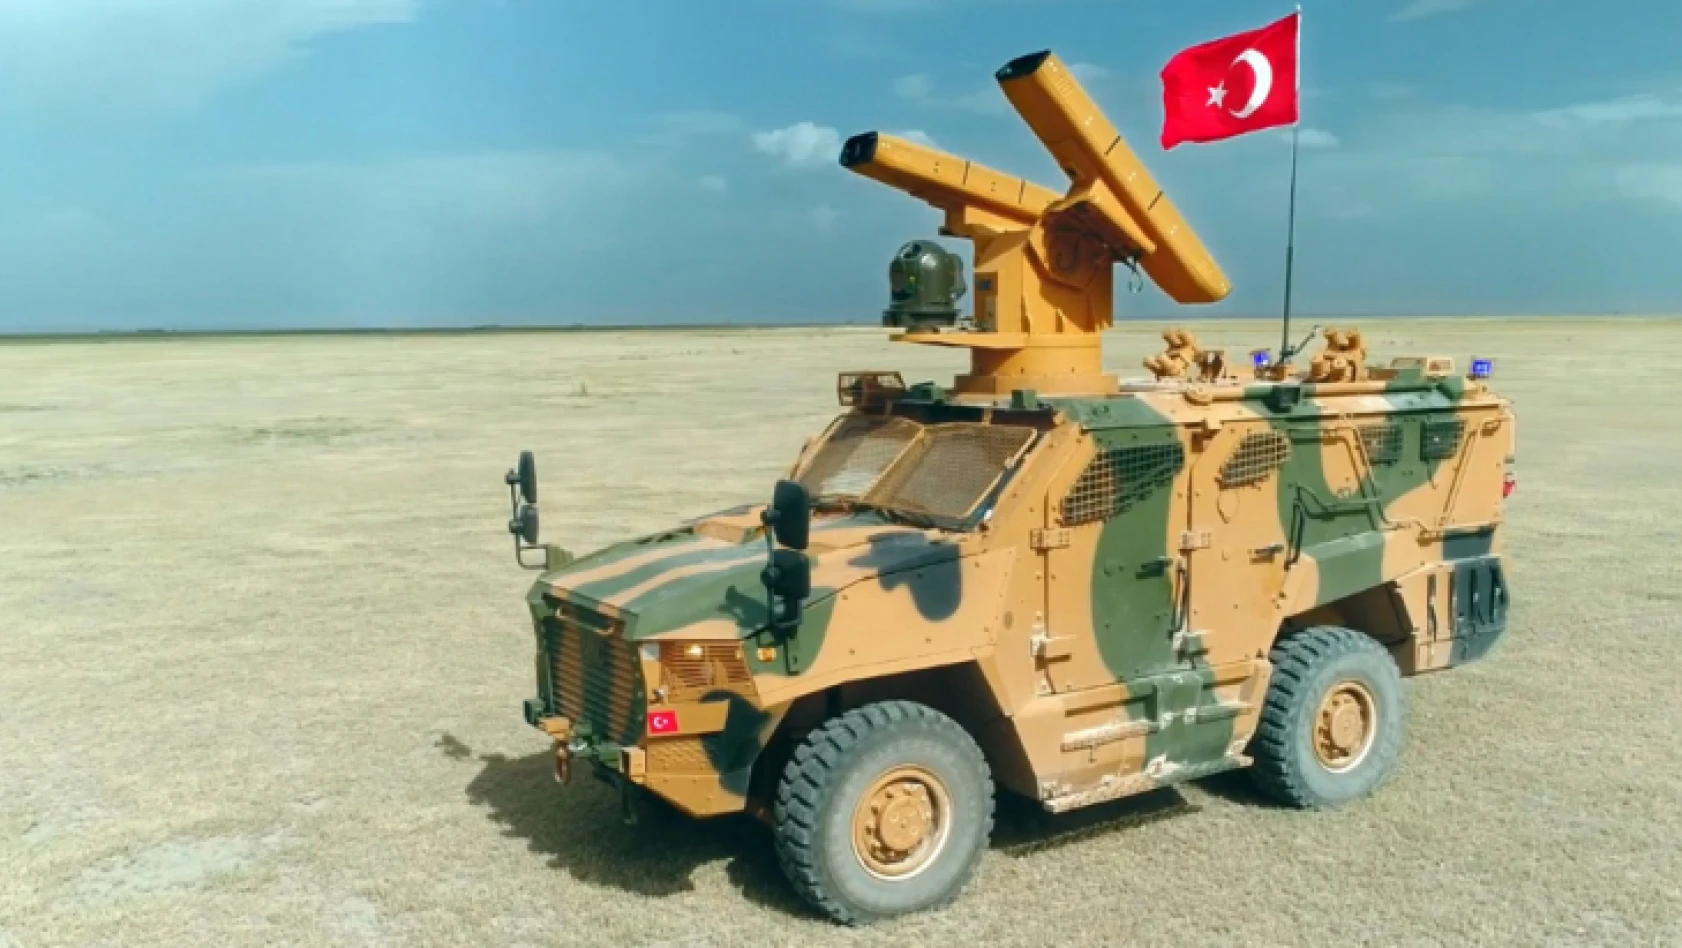 Türk savunma sanayii, kabiliyetlerini Afrika'da sergileyecek